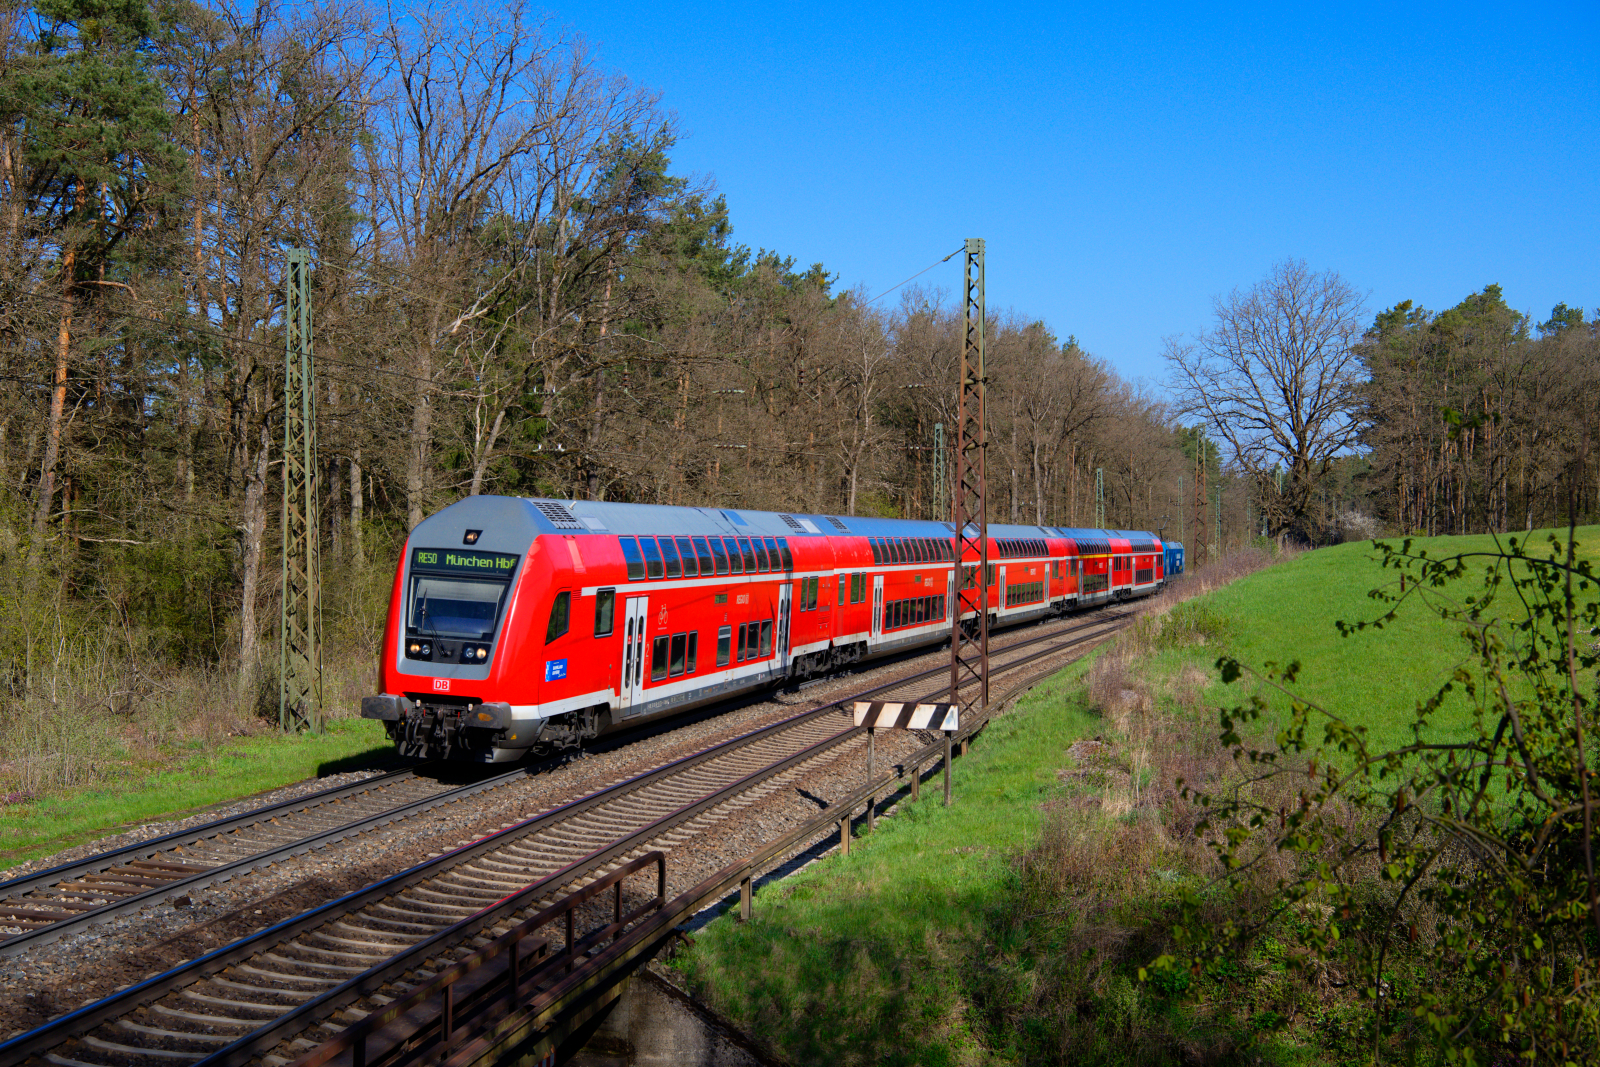 146 246 DB Regio  Bahnland Bayern - Zeit für dich  schiebt RE 4857 (Nürnberg Hbf - München Hbf) bei Burgthann, 23.04.2021